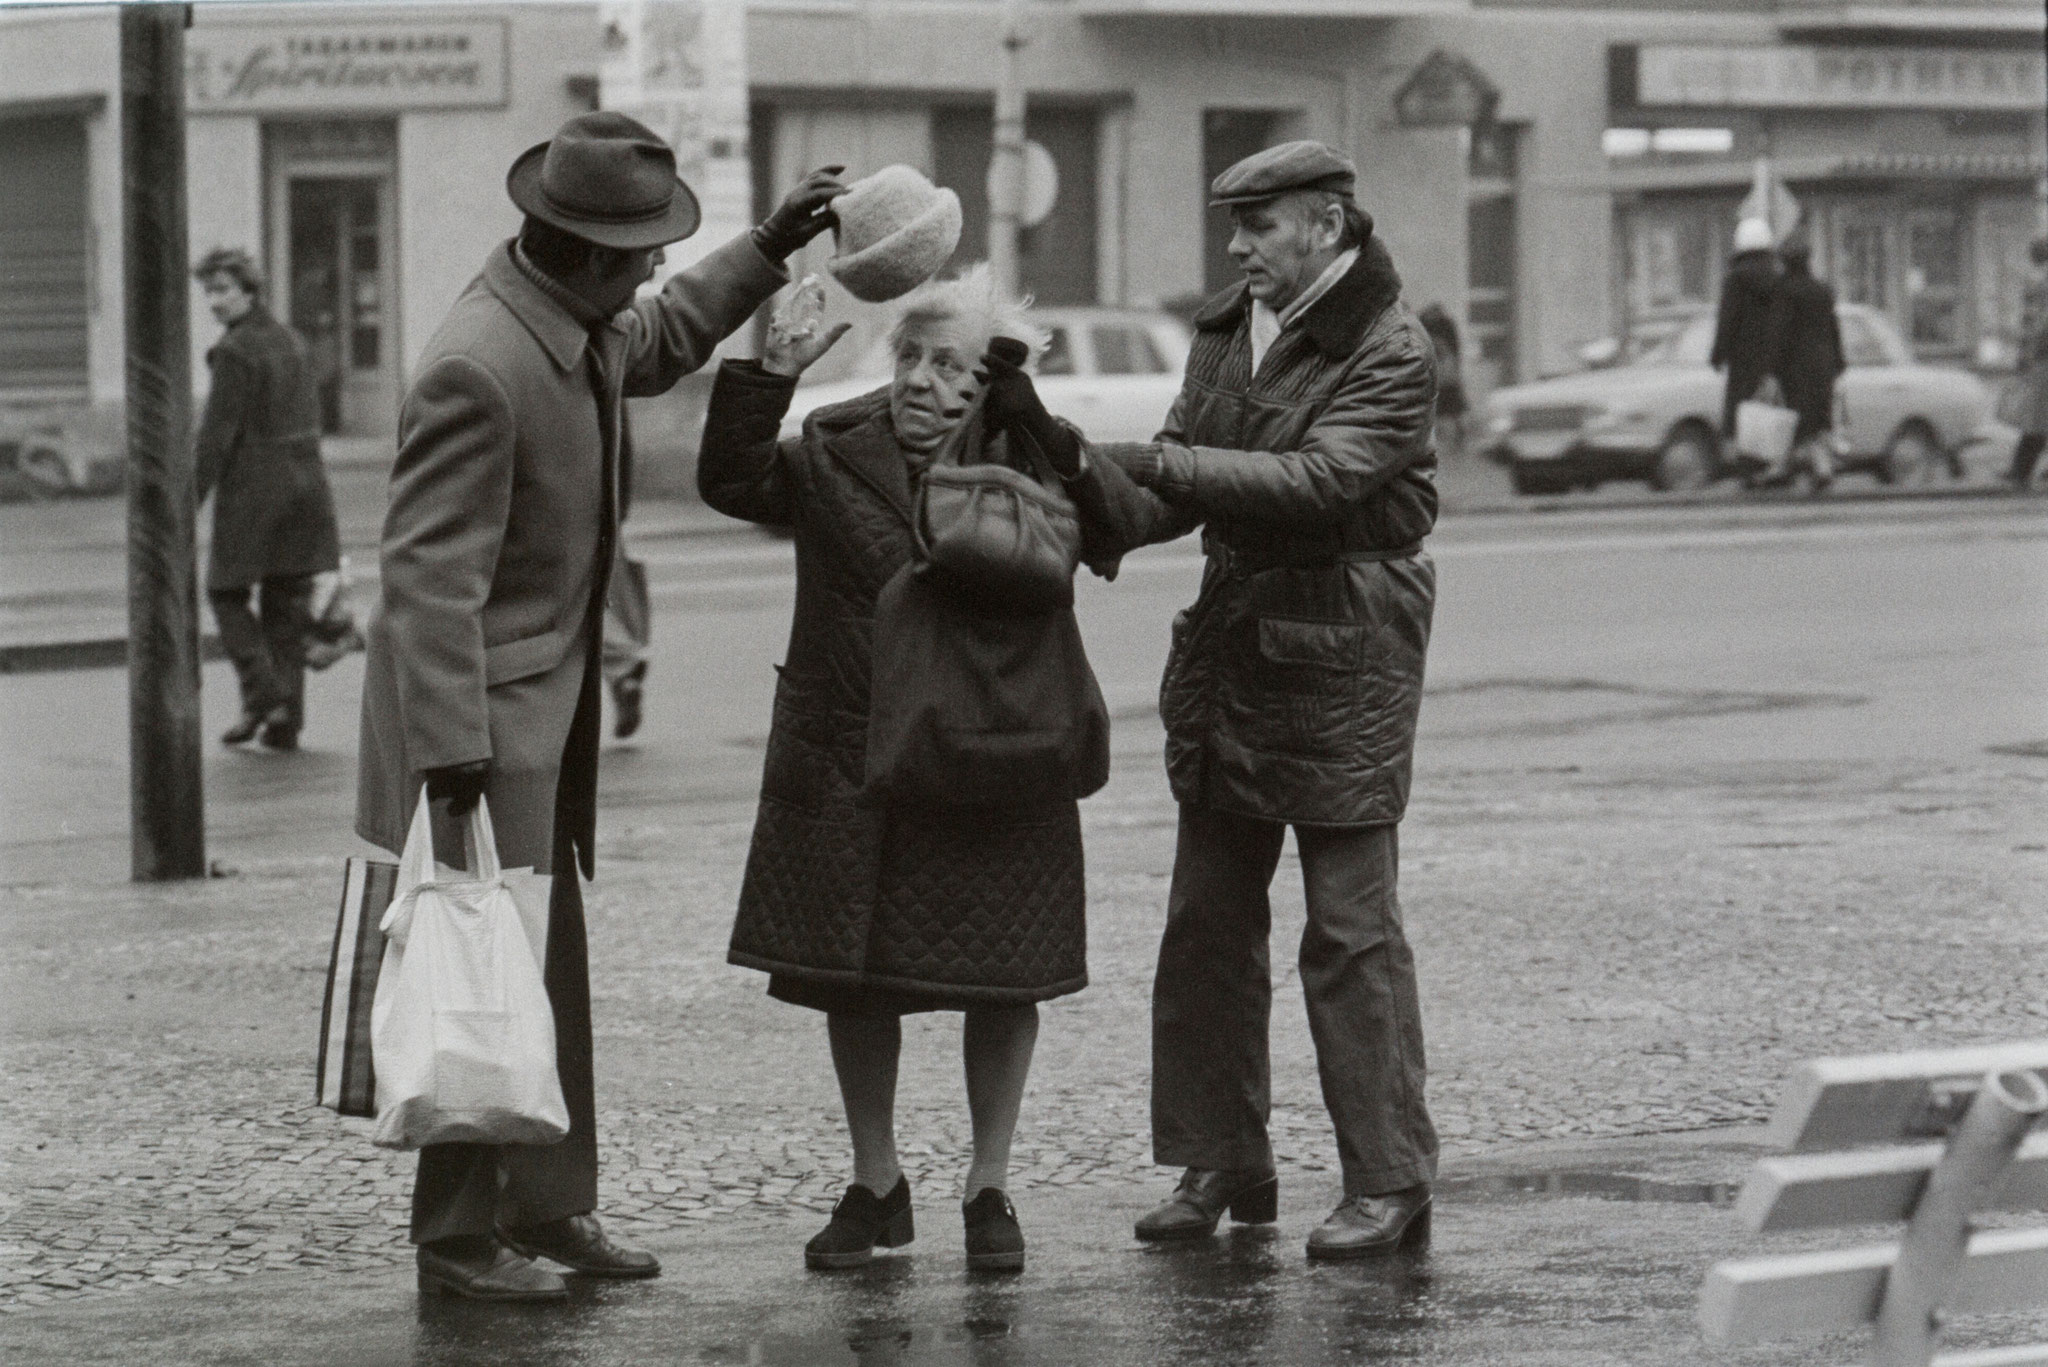 Eine ältere Dame ist bei Glatteis gestürzt. Zwei Passanten haben beim Aufstehen geholfen und geben ihr Handtasche und Hut zurück. Aufnahme von 1973. Foto: DDR Fotoerbe / Michael Richter